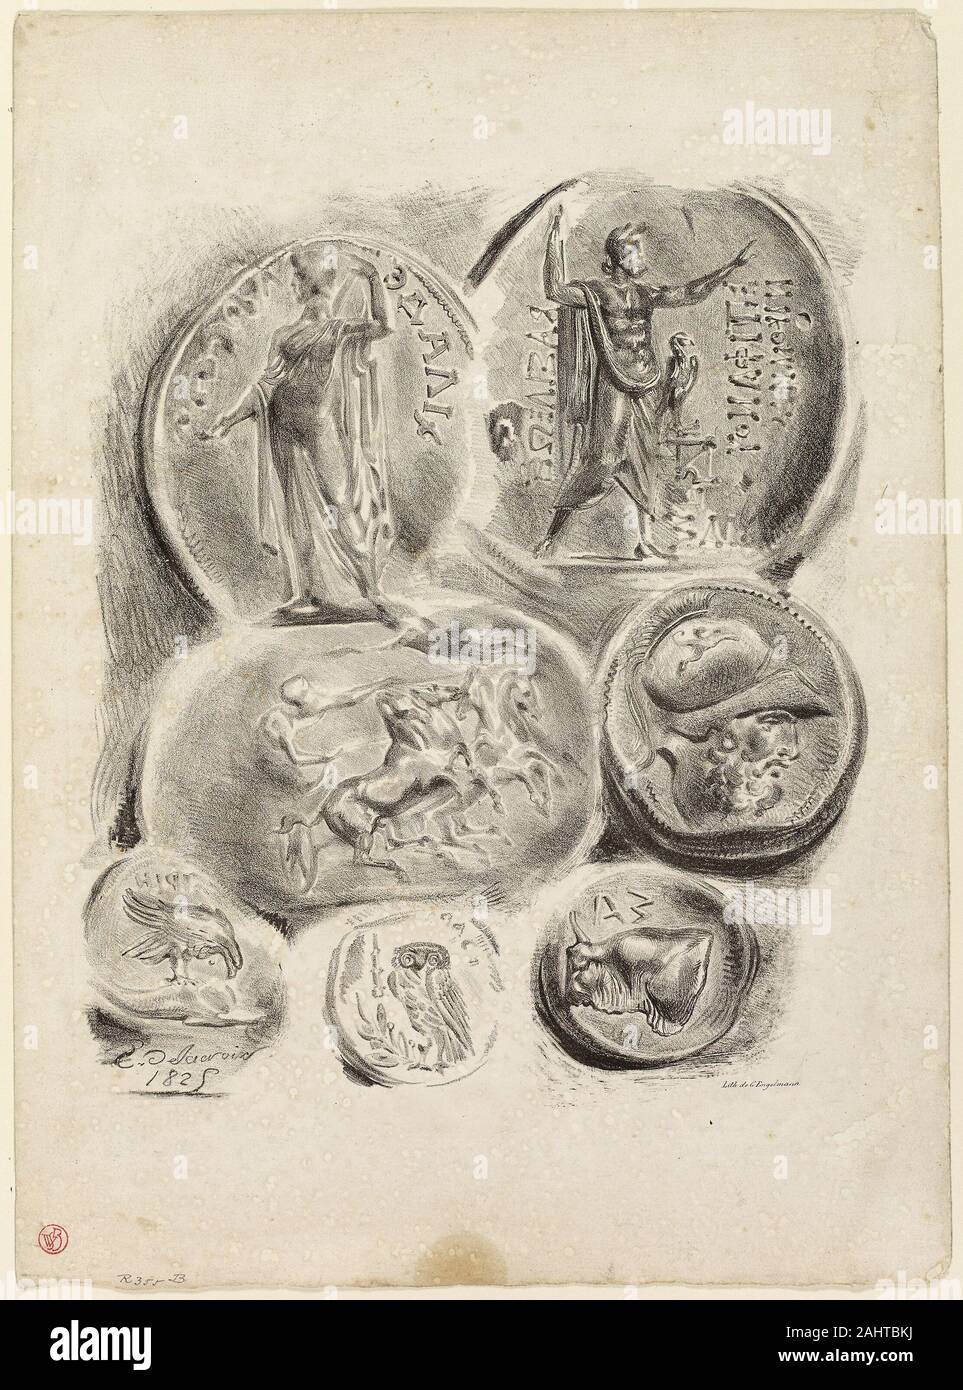 Eugène Delacroix. Feuille de sept Médailles antiques. 1825. La France. Lithographie en noir sur papier vélin gris clair Banque D'Images